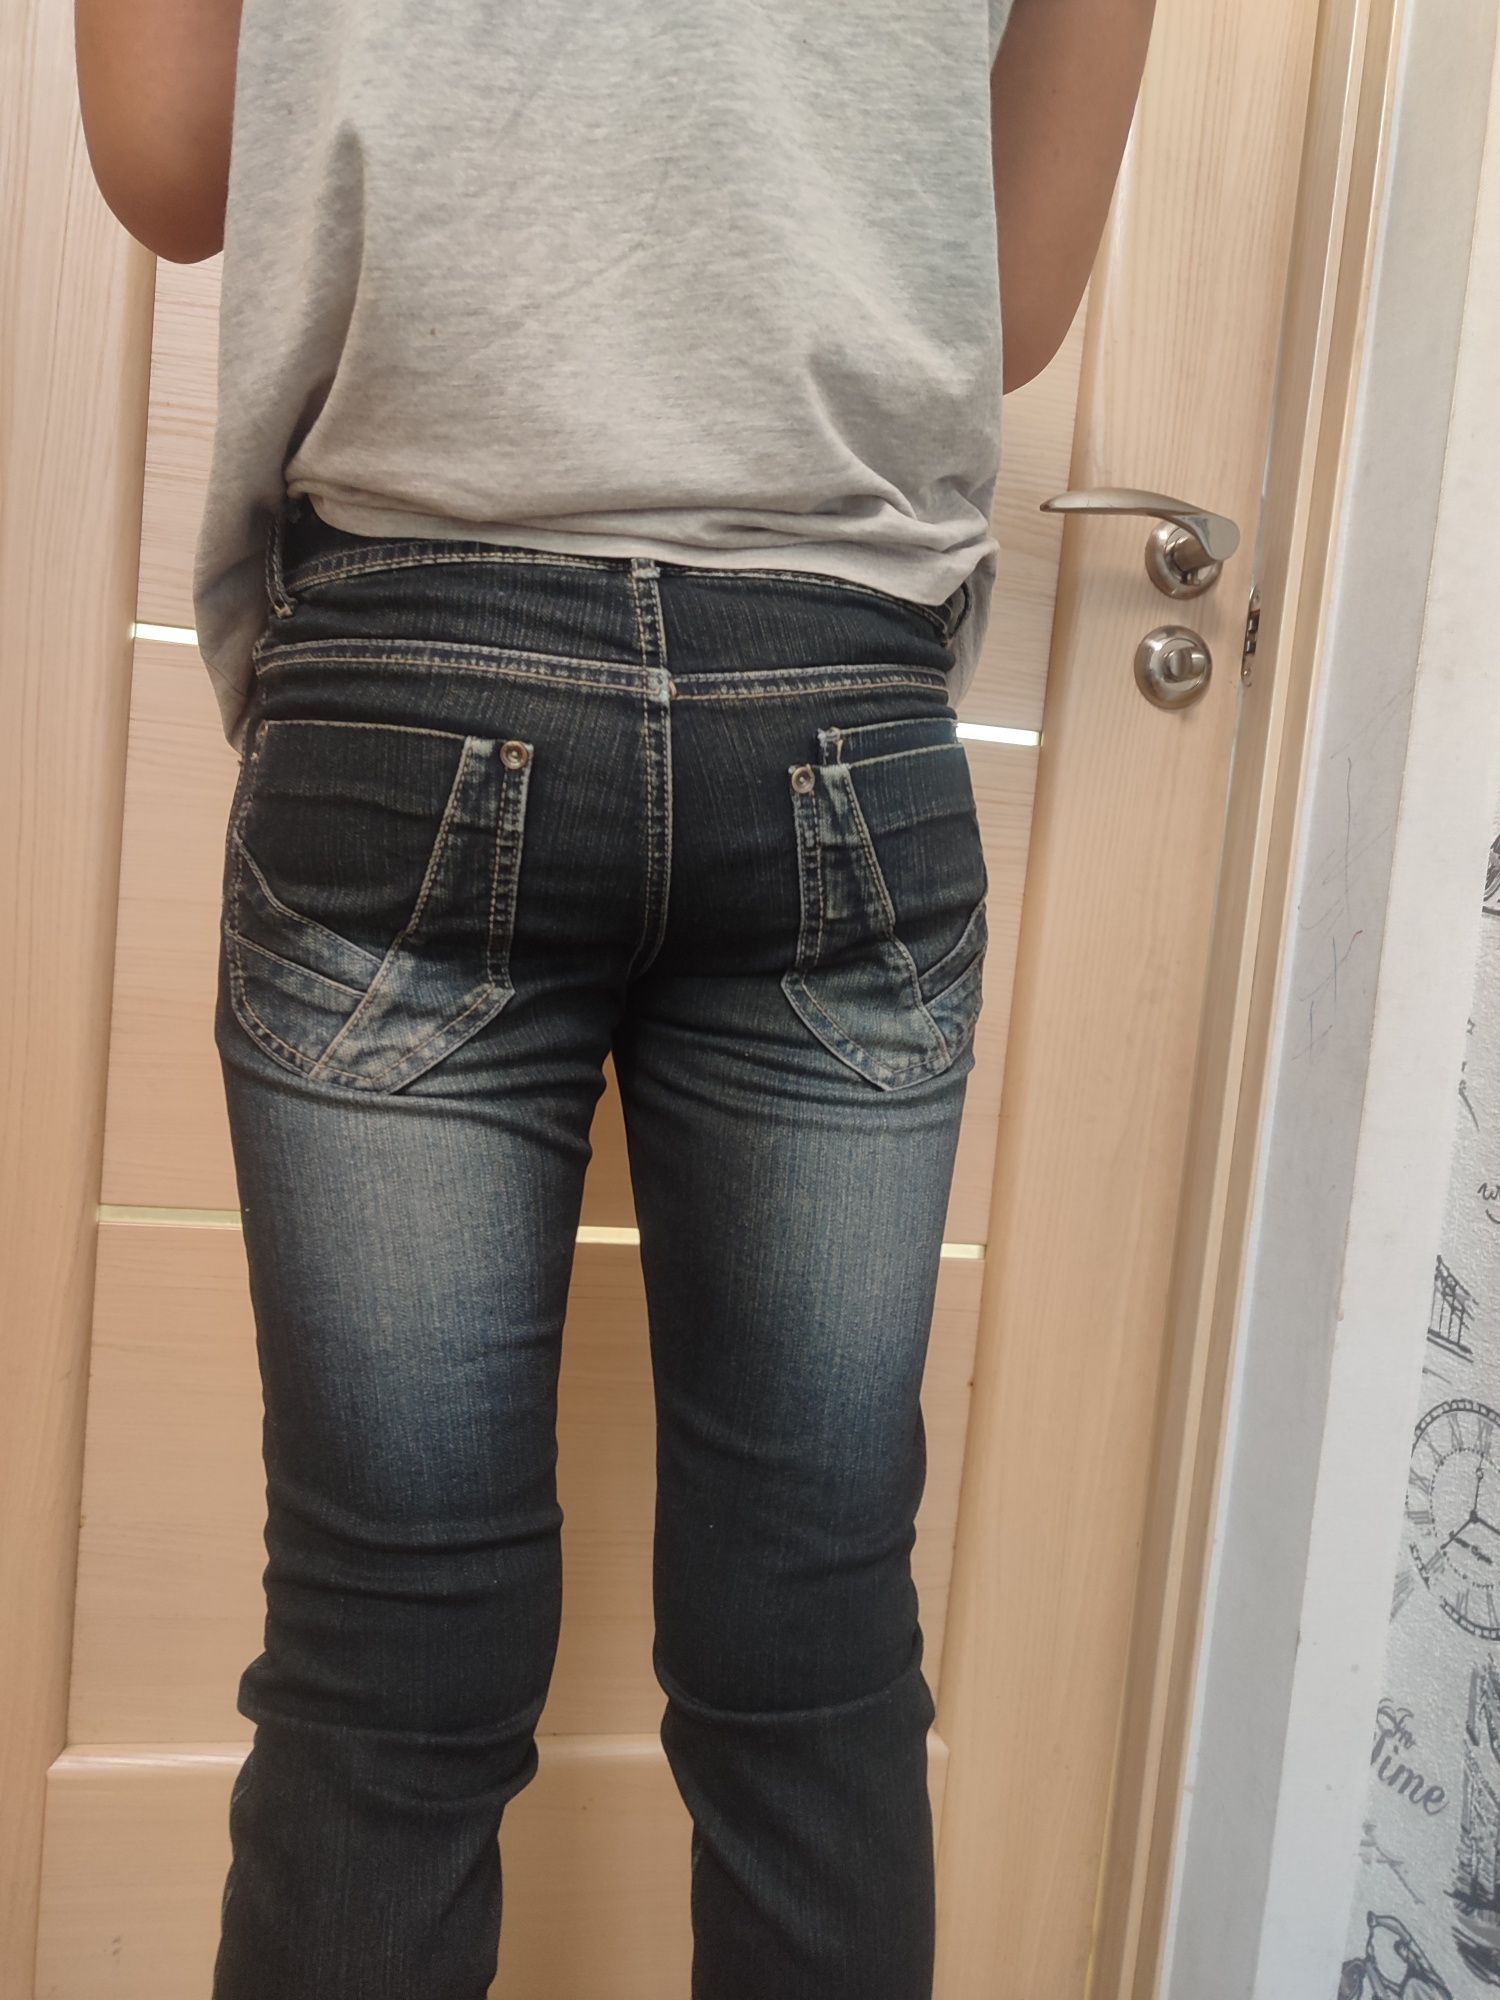 Джинсы 152 размер в идеальном состоянии #штаны на подростка